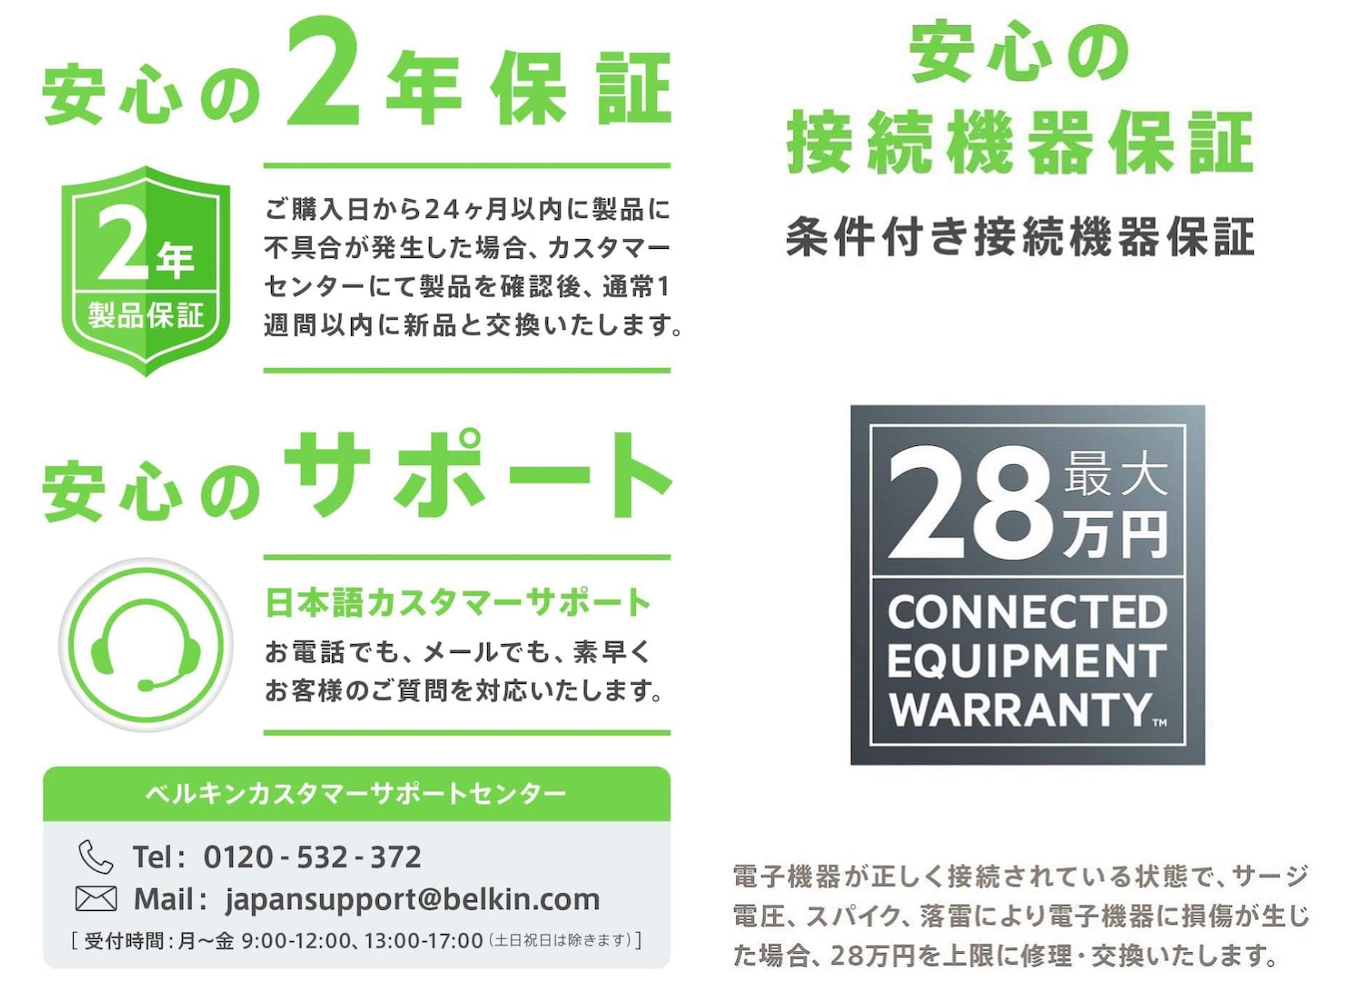 【安心の2年保証】2年保証に加え最大28万円を上限とした「条件付き接続機器保証」付き。